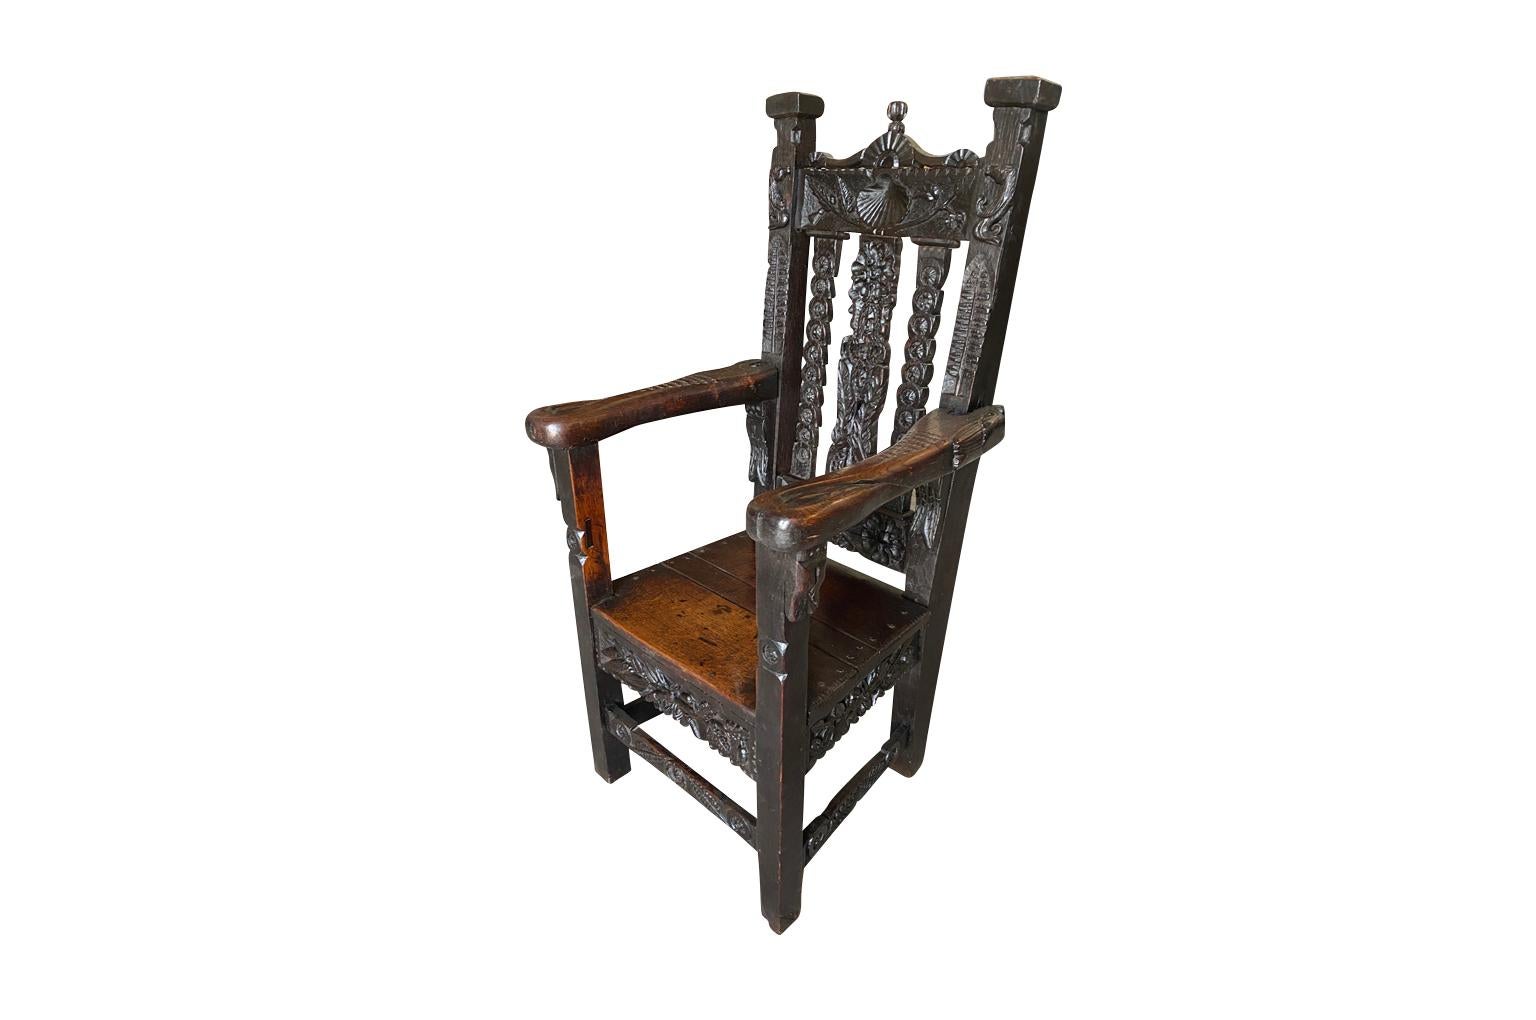 Ein sehr schöner Sessel aus dem 17. Jahrhundert, der aus reichlich gebeizter Eiche besteht. Wunderschöne Schnitzdetails. Die Sitzhöhe beträgt 17 1/8